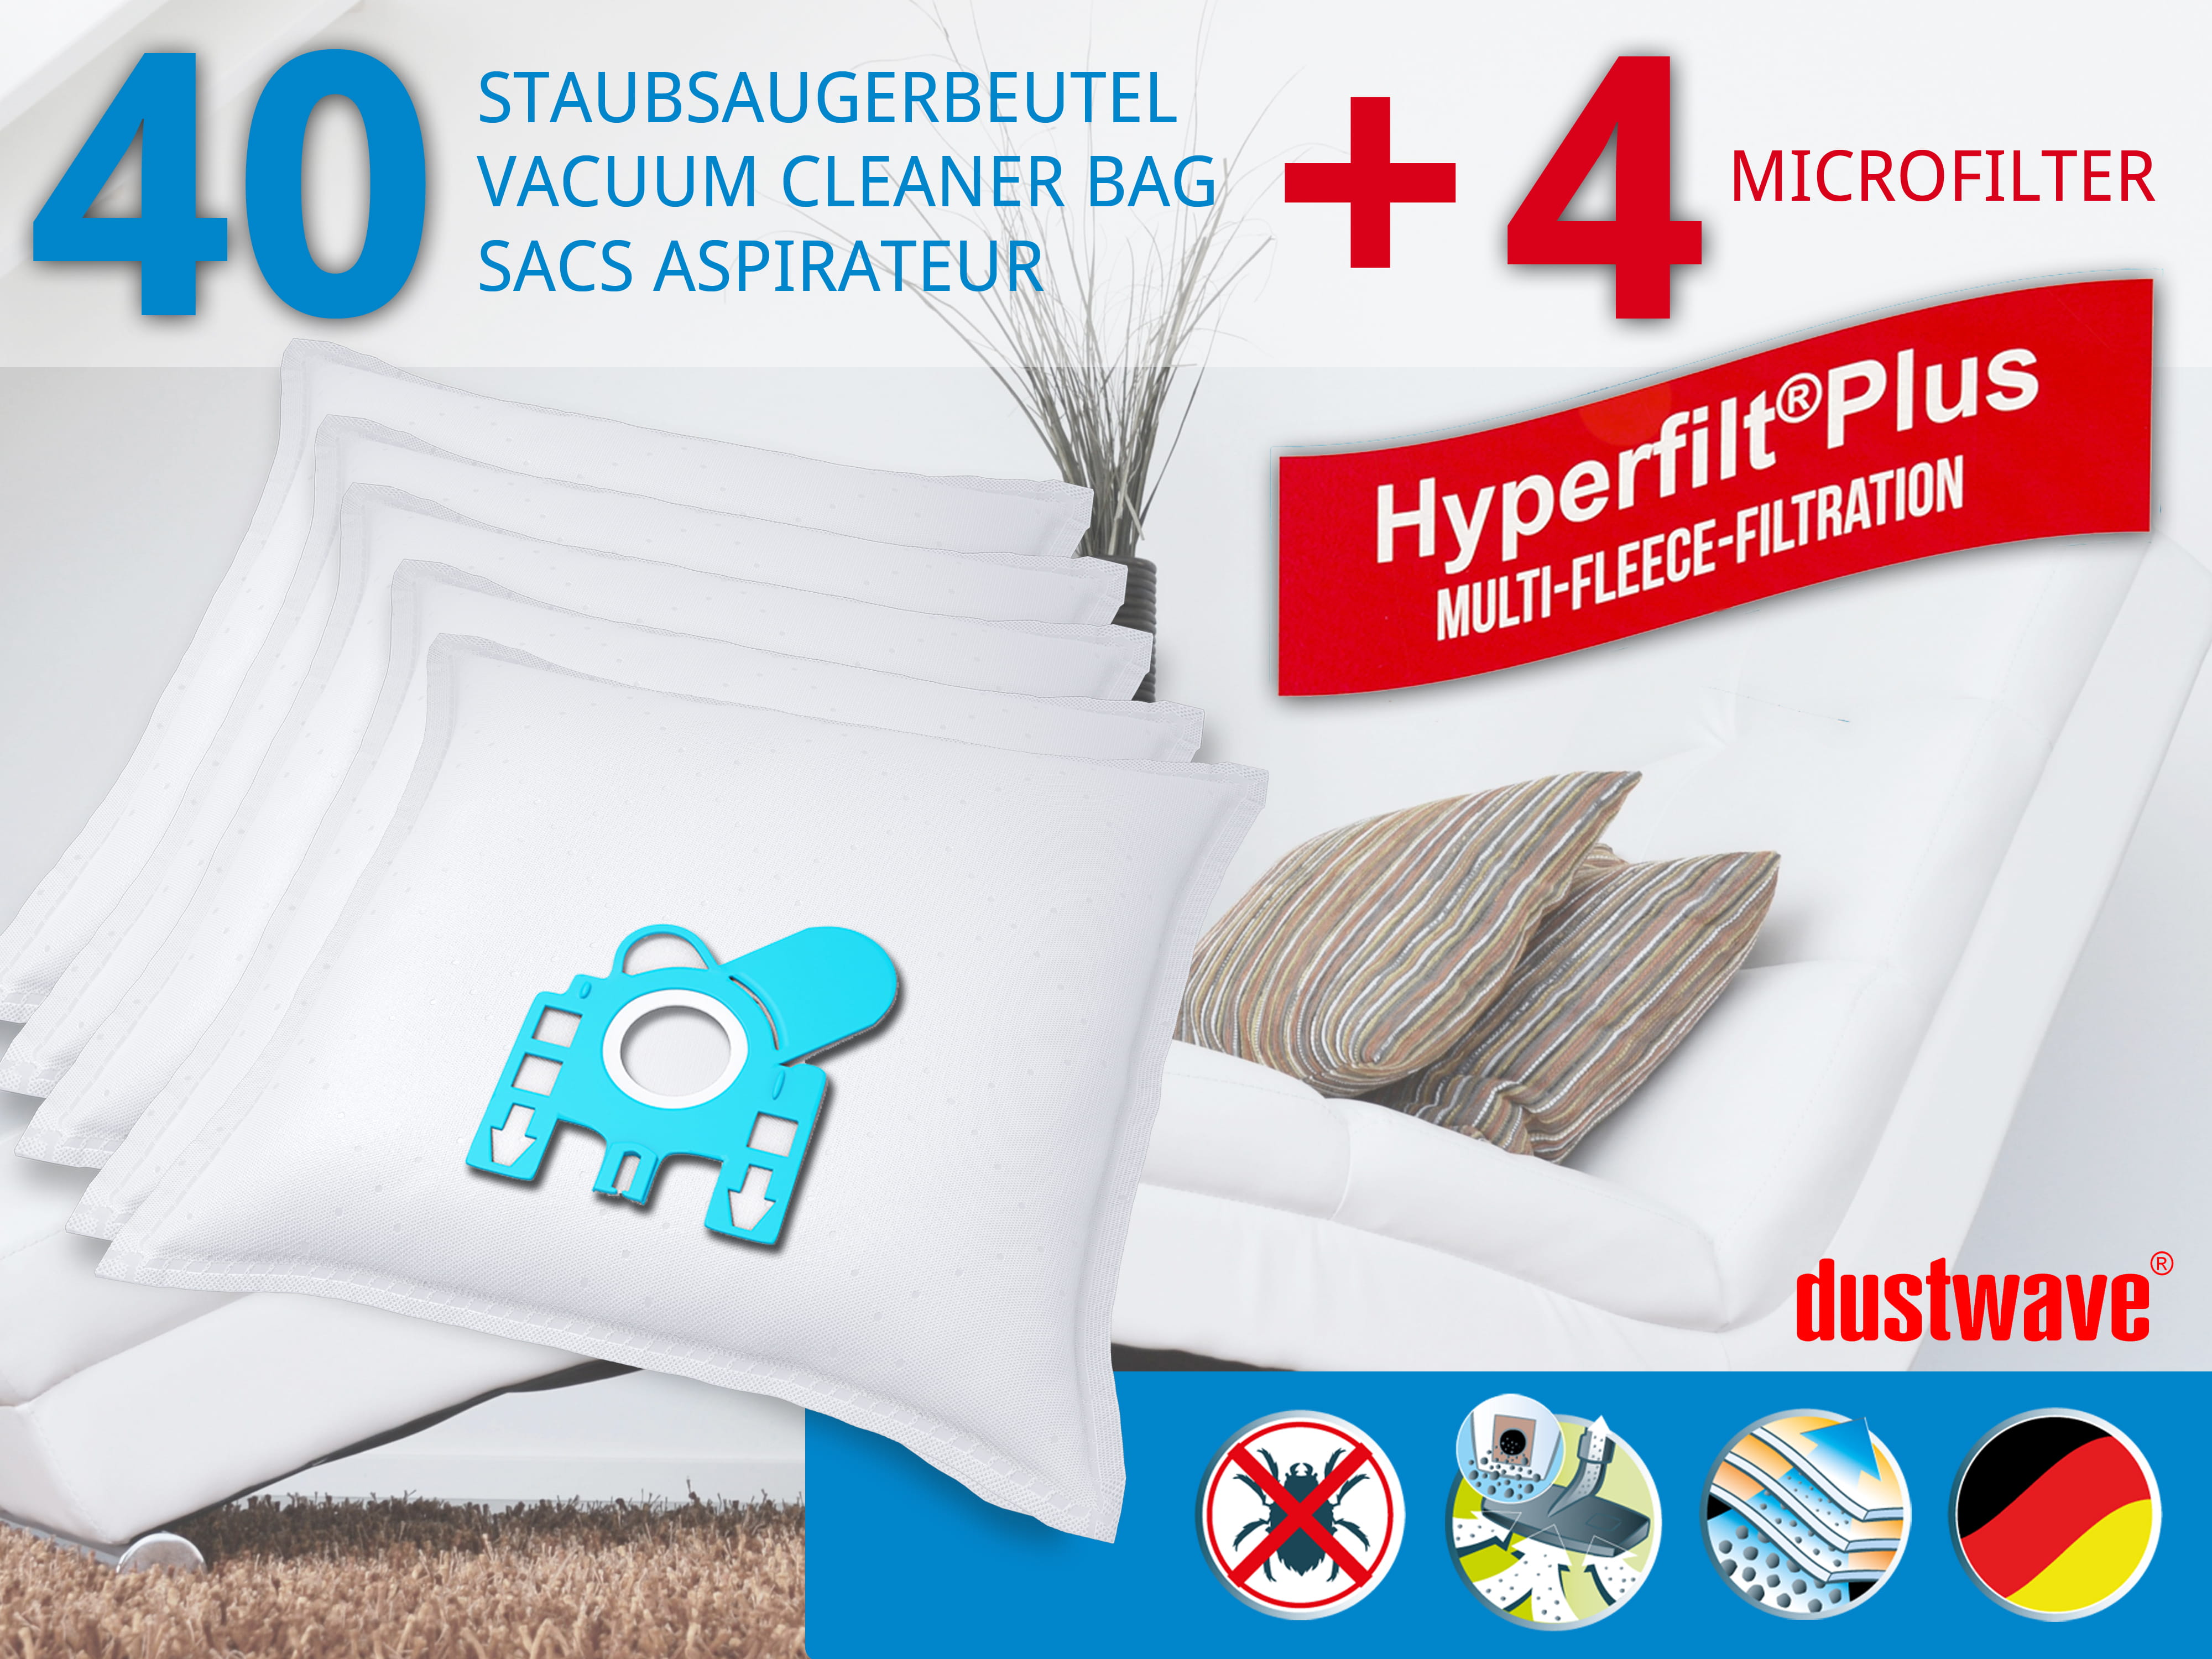 Dustwave® 40 Staubsaugerbeutel für Hoover 39000247 - hocheffizient, mehrlagiges Mikrovlies mit Hygieneverschluss - Made in Germany